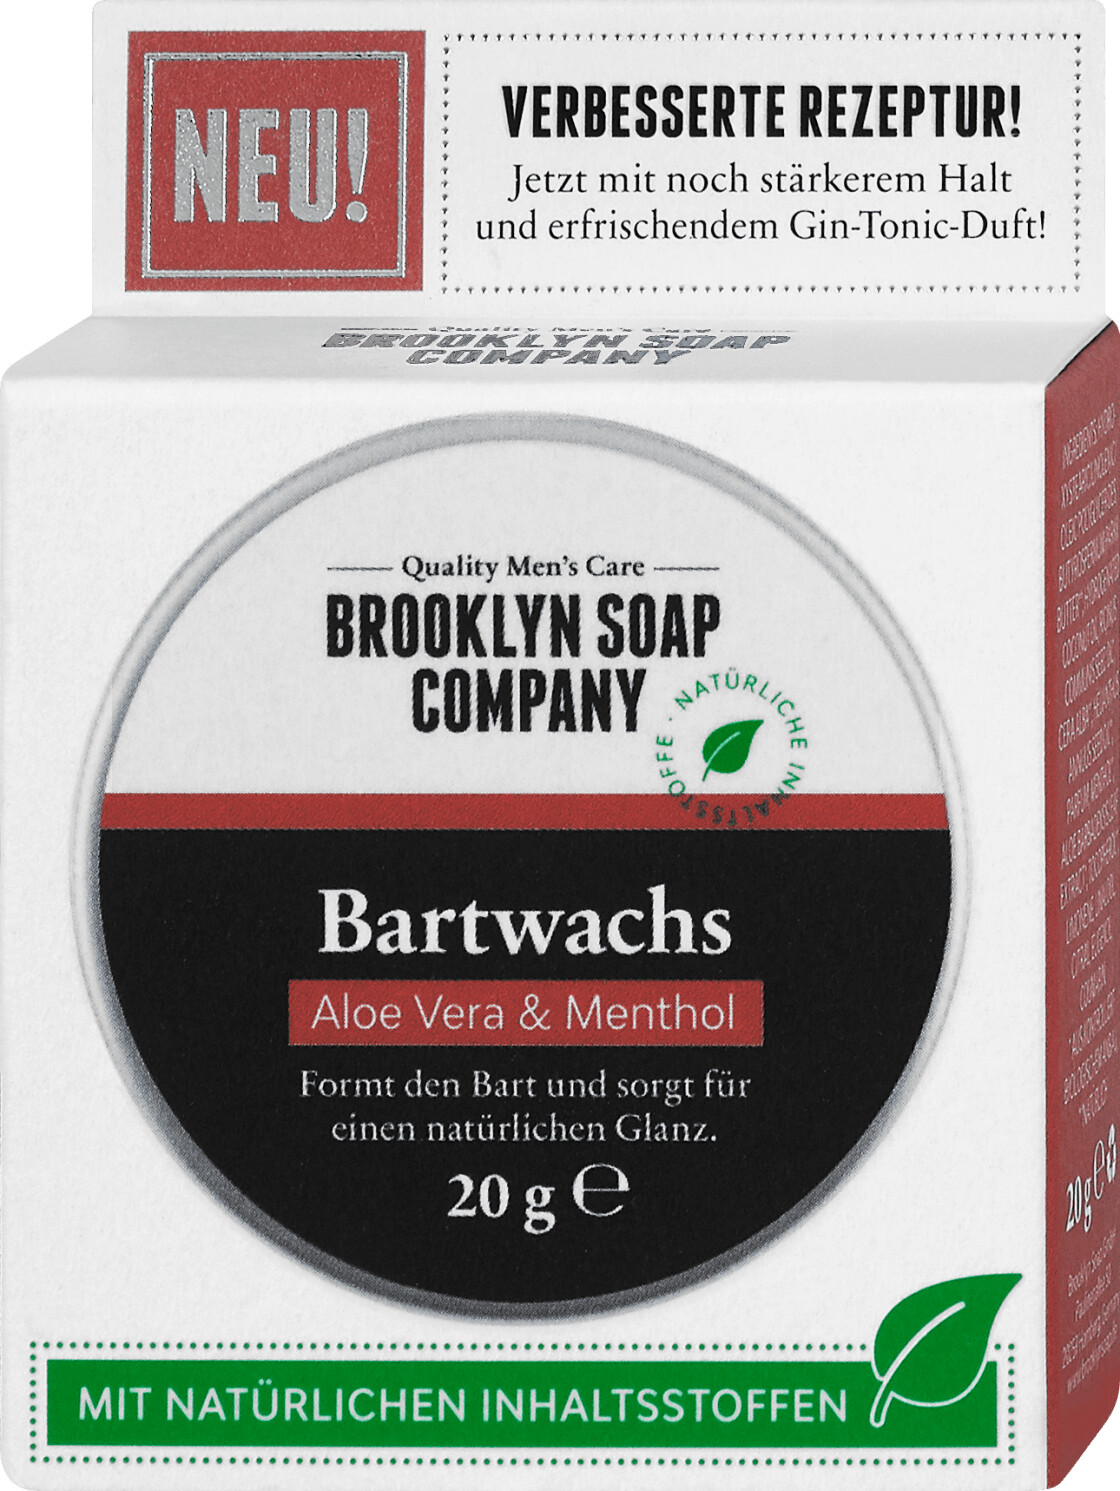 Brooklyn Soap Company Bartwachs Kokos & Rosmarin (20 g) ab 5,95 € |  Preisvergleich bei